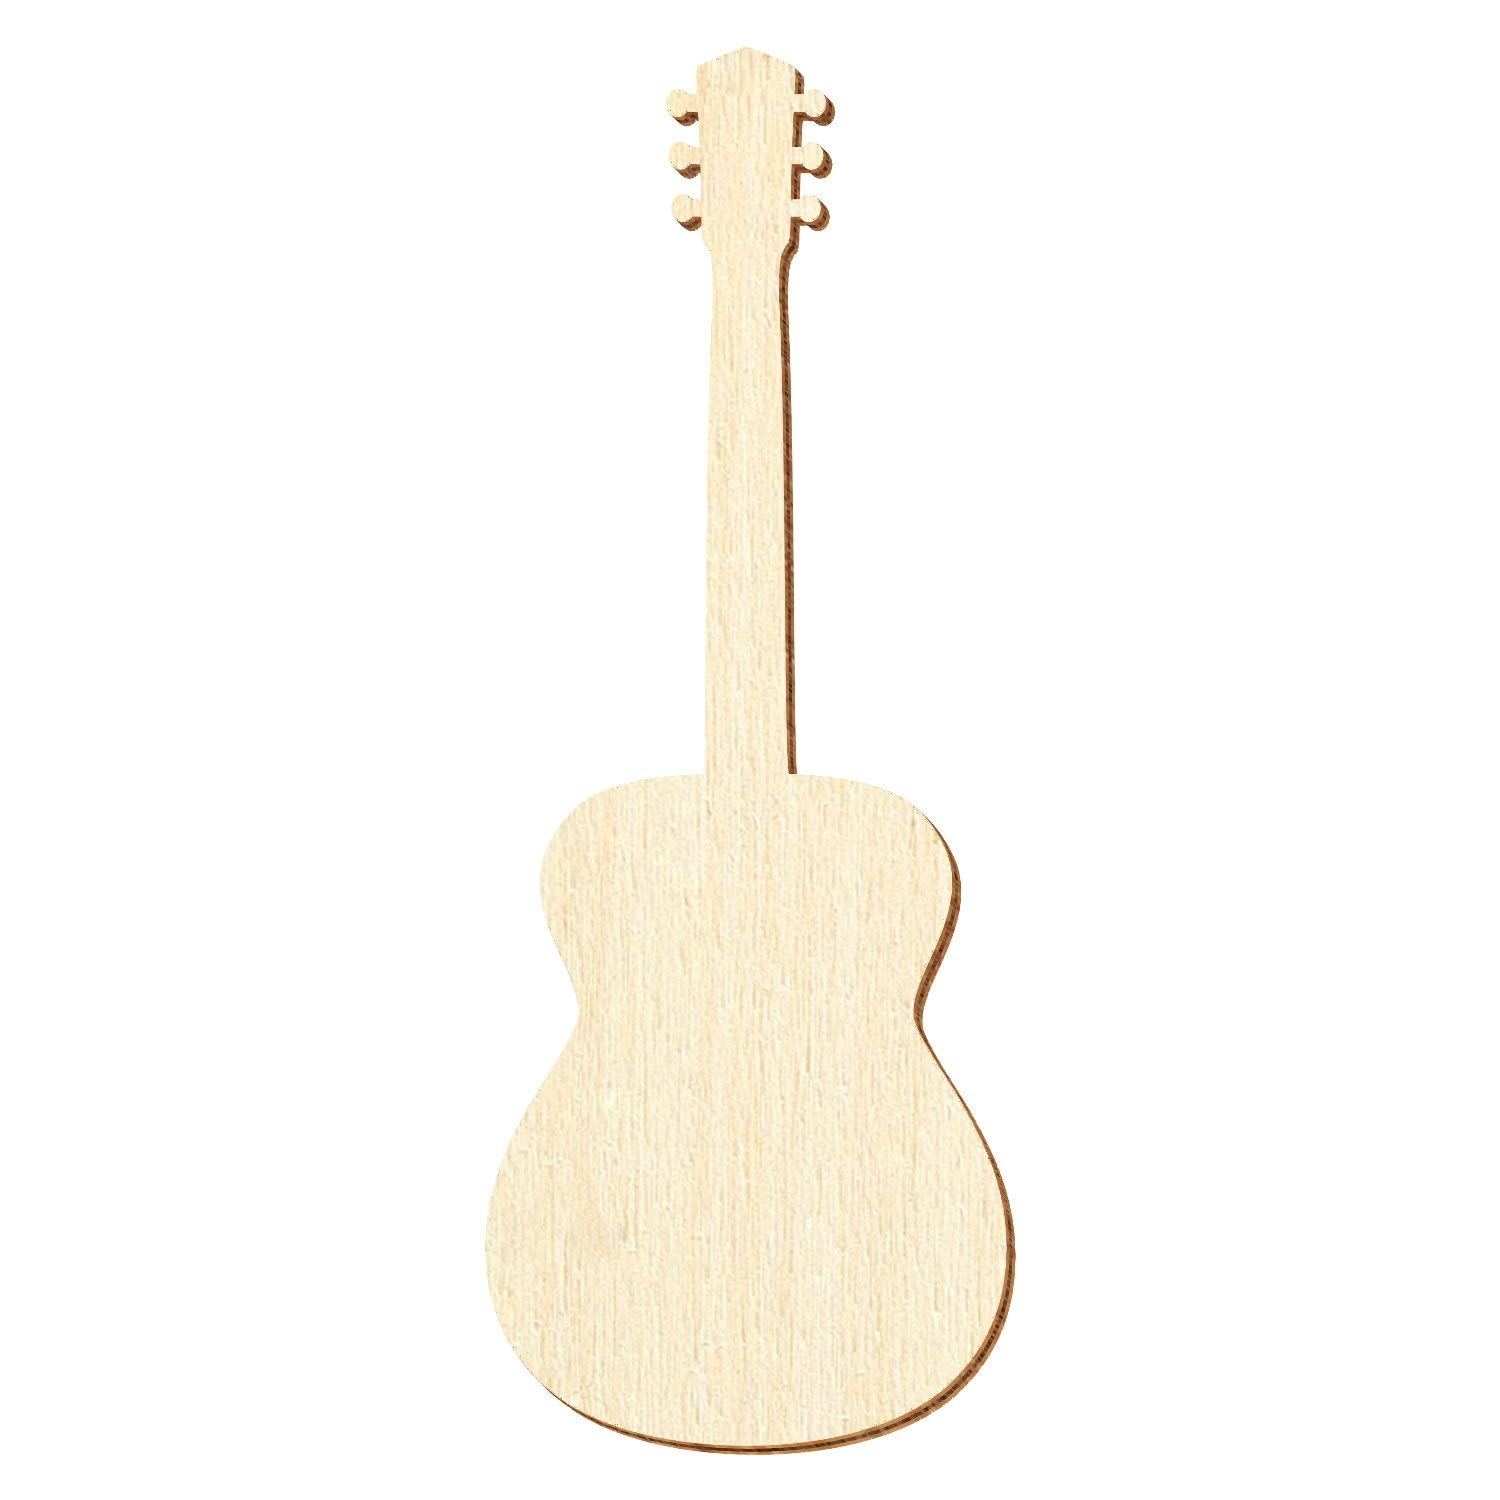 Holz Akustikgitarre - Deko Zuschnitte Größenauswahl, Pack mit:25 Stück, Größe:26cm